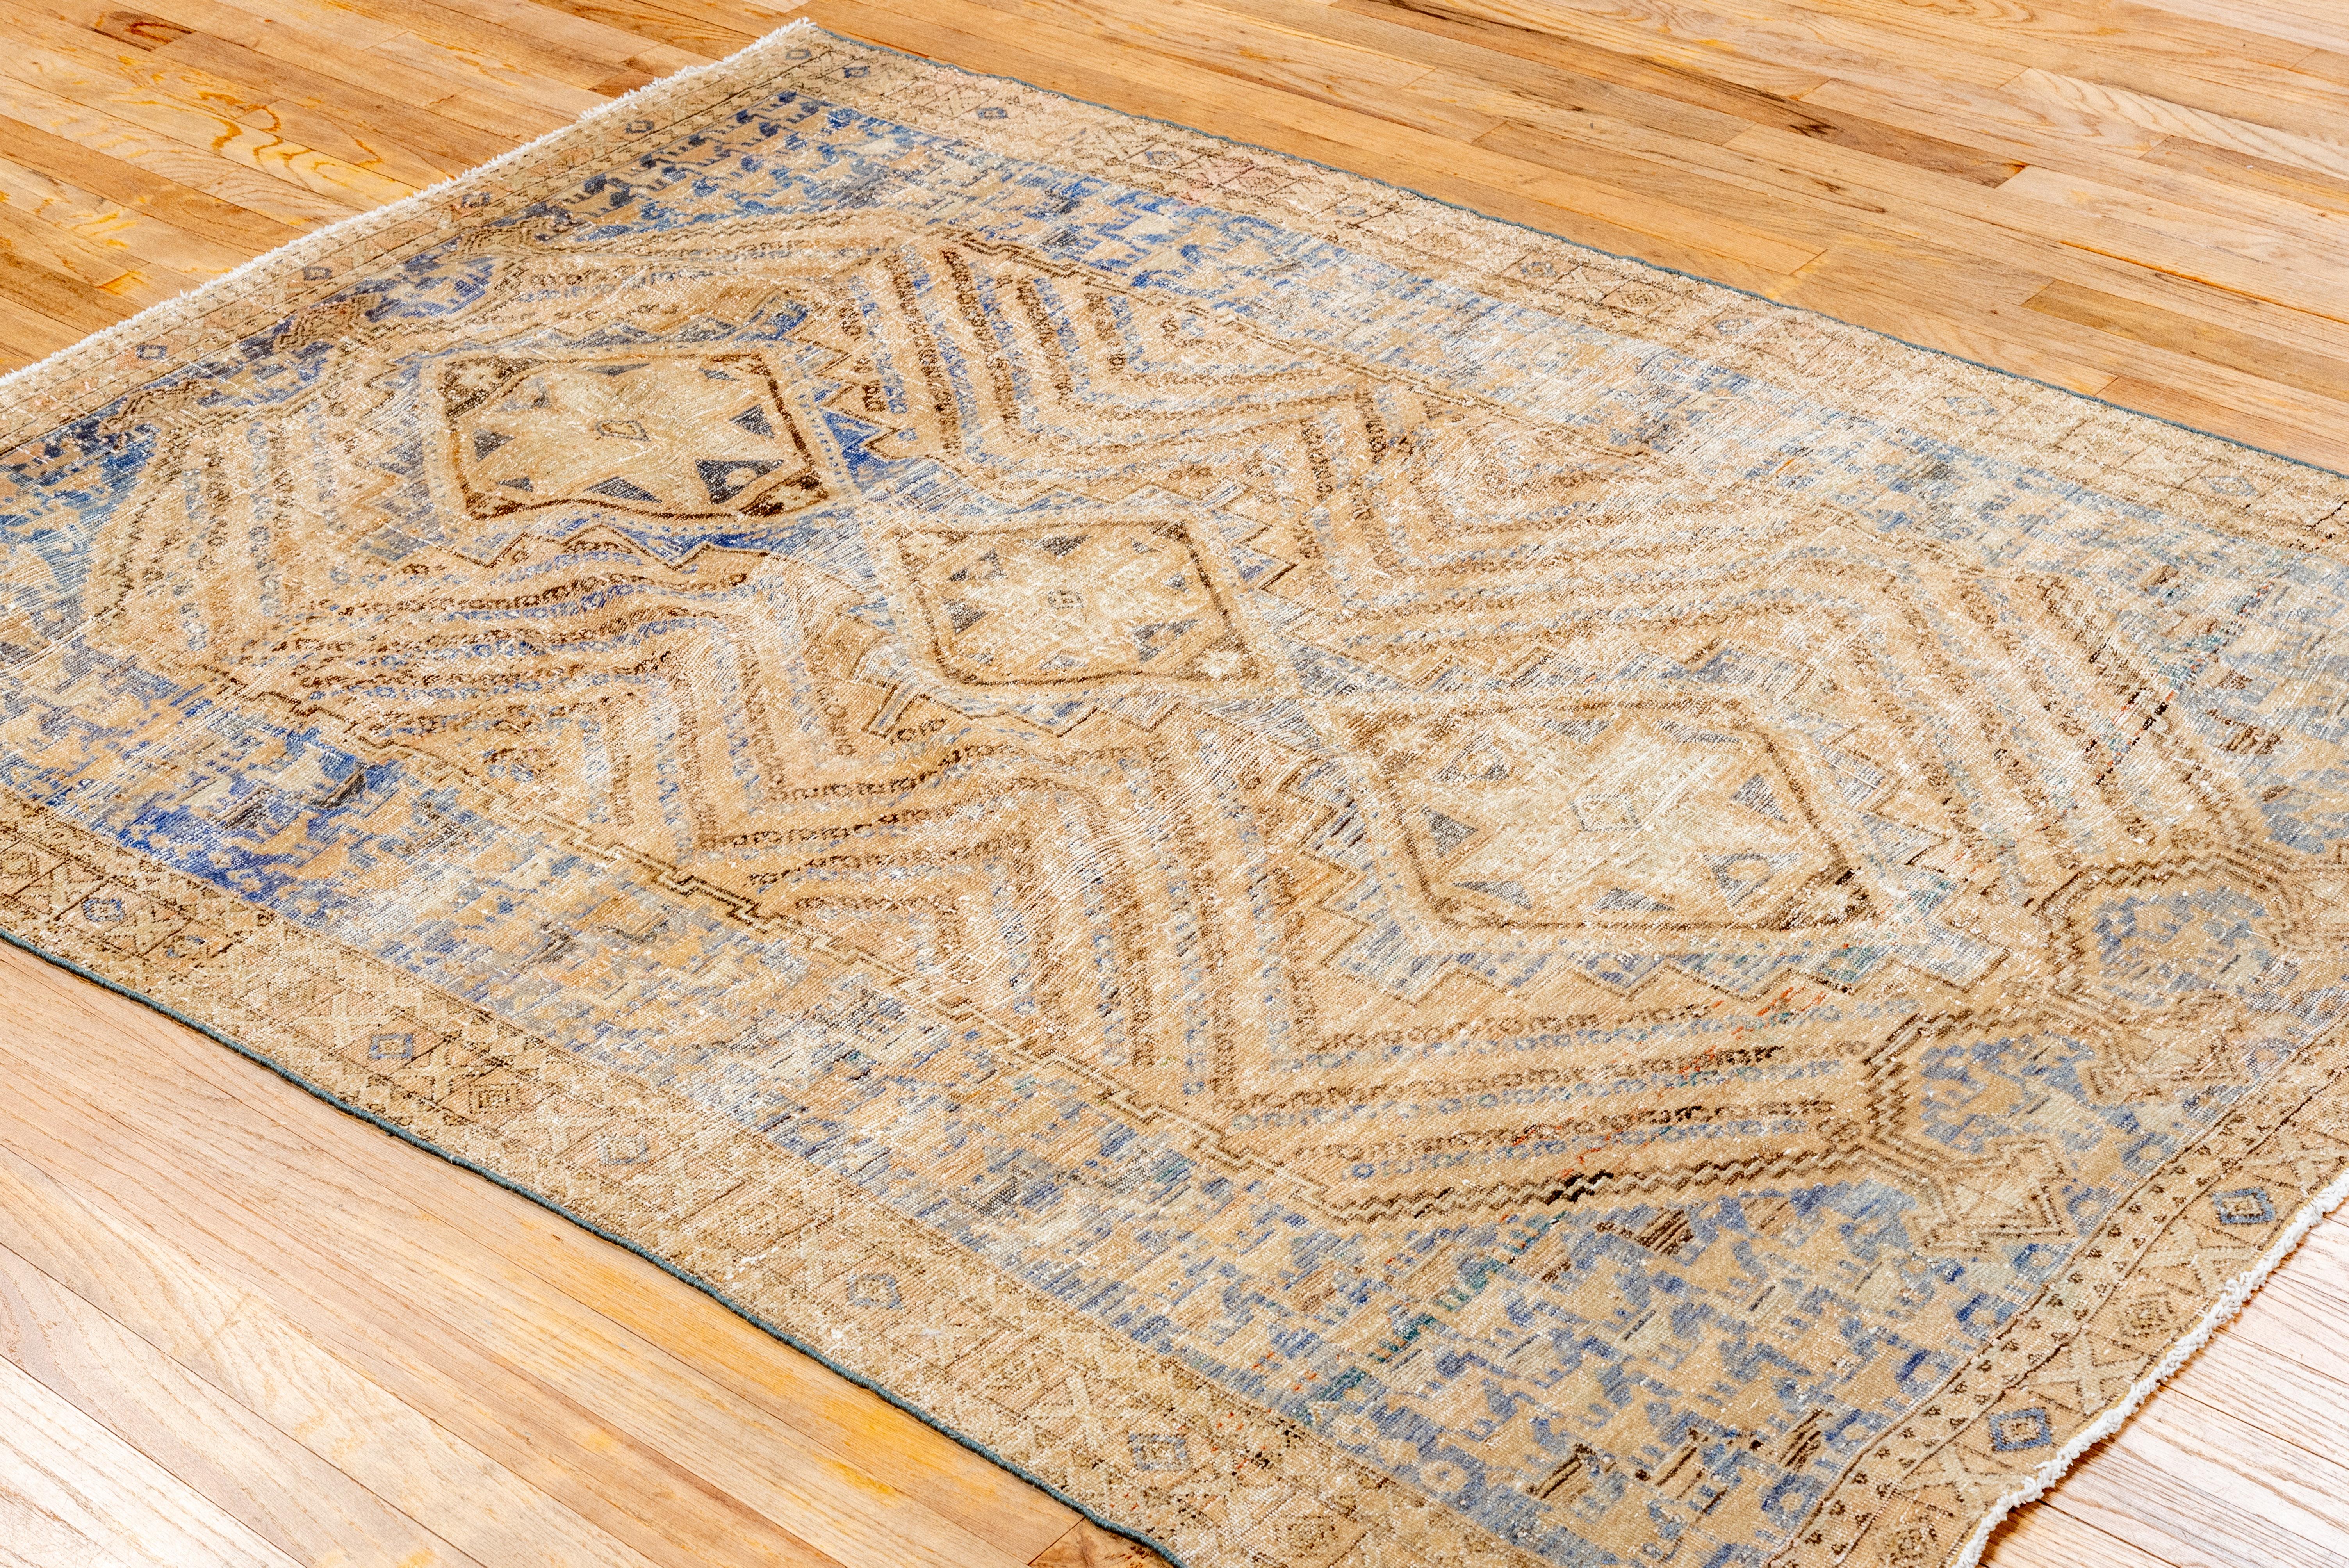 Afshar-Teppiche  sind eine Art handgewebter Teppich, der traditionell vom Stamm der Afshar im Iran hergestellt wird. Das Volk der Afscharen ist eine halbnomadische Gruppe, die hauptsächlich in der südöstlichen Region des Iran, der Provinz Kerman,